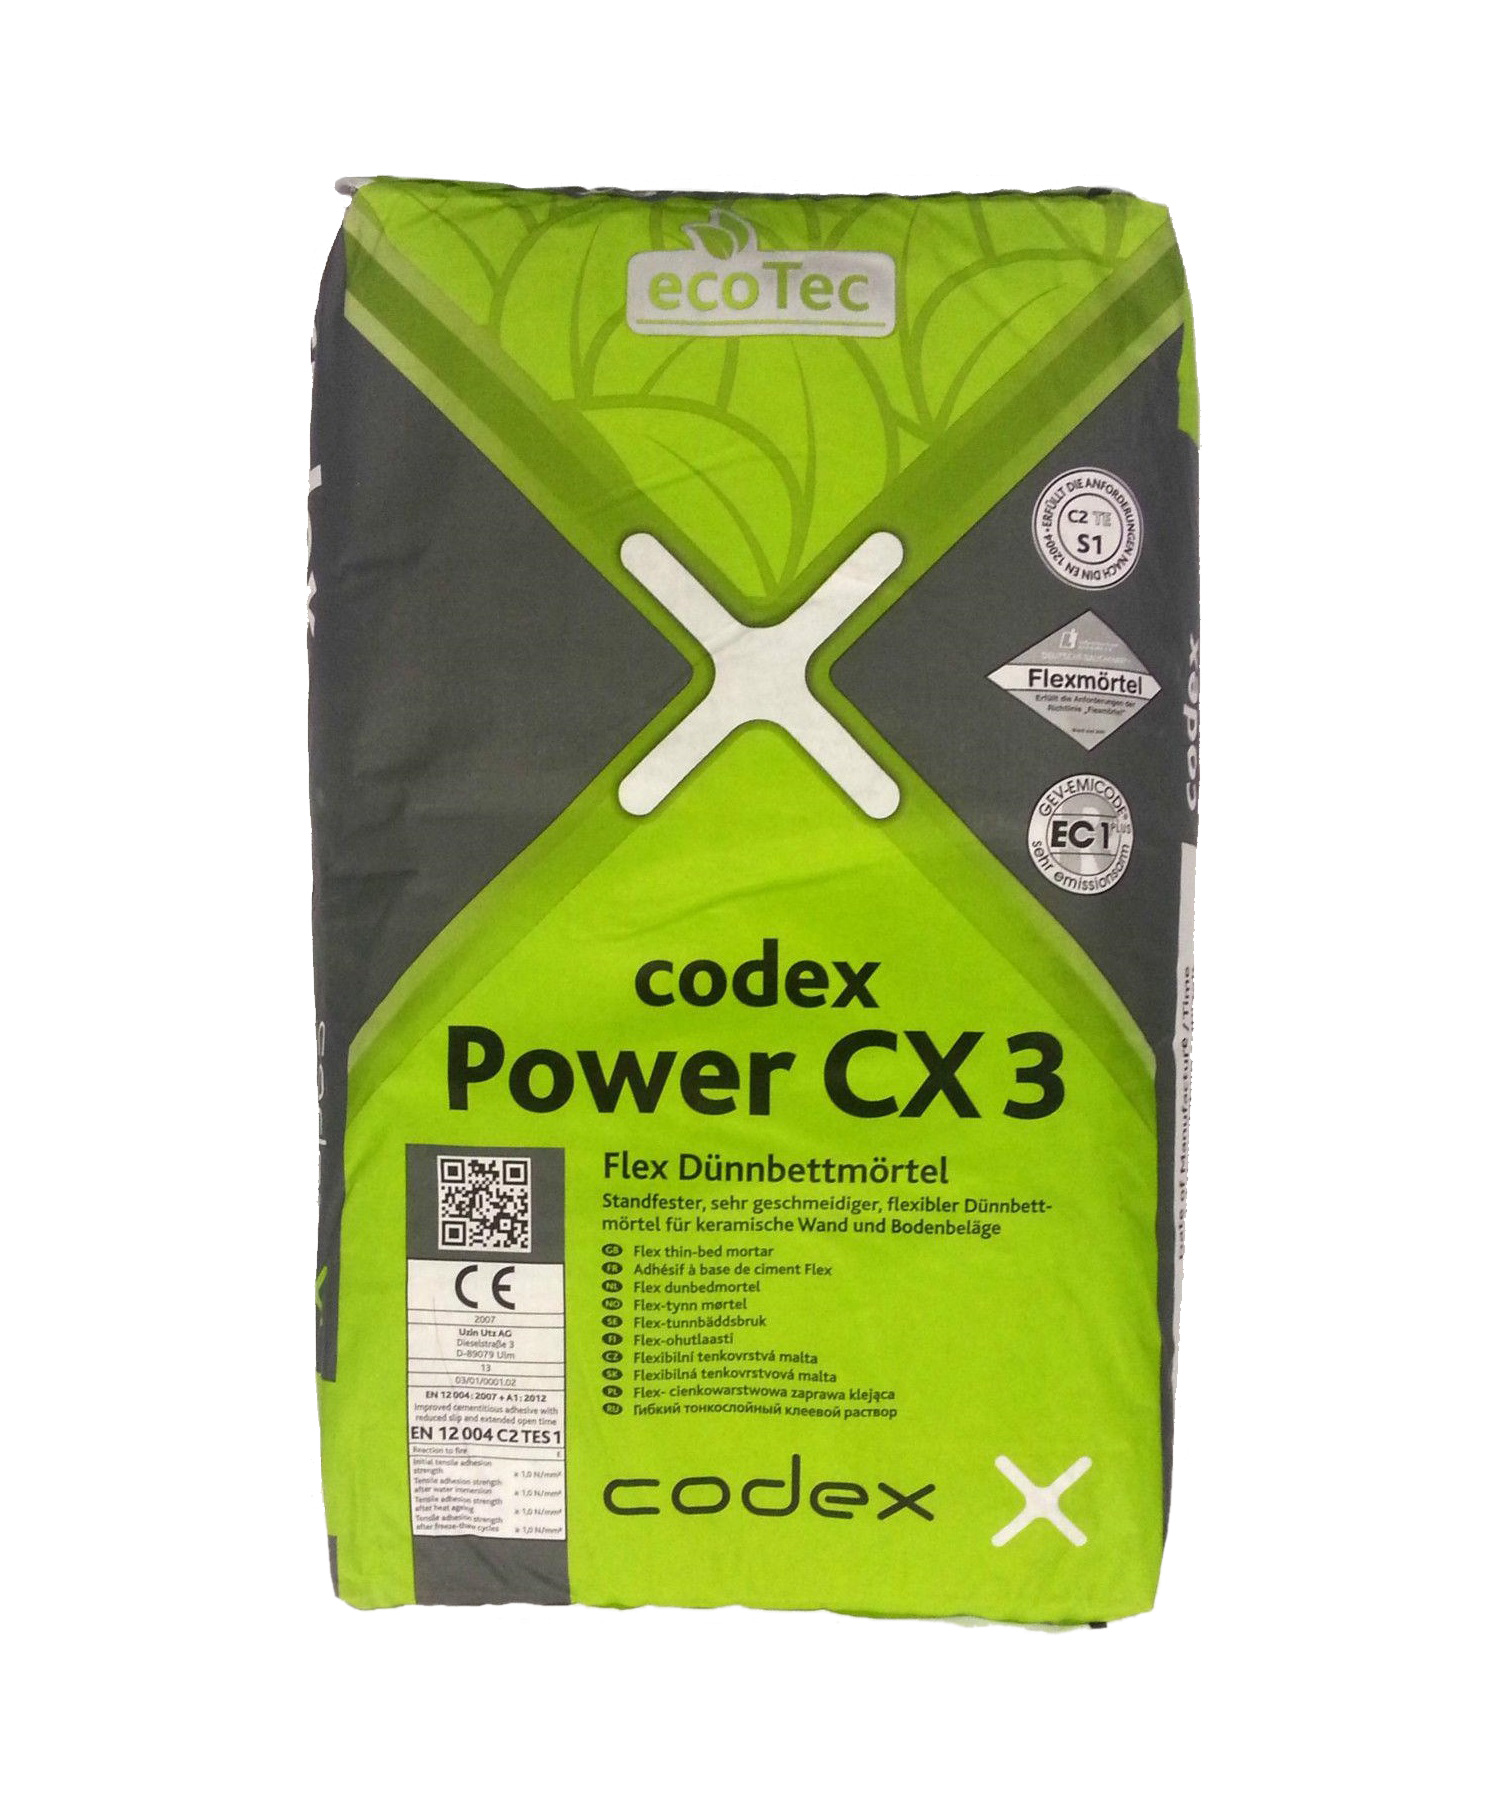 codex Power CX 3 Flex Dünnbettmörtel - 5kg 